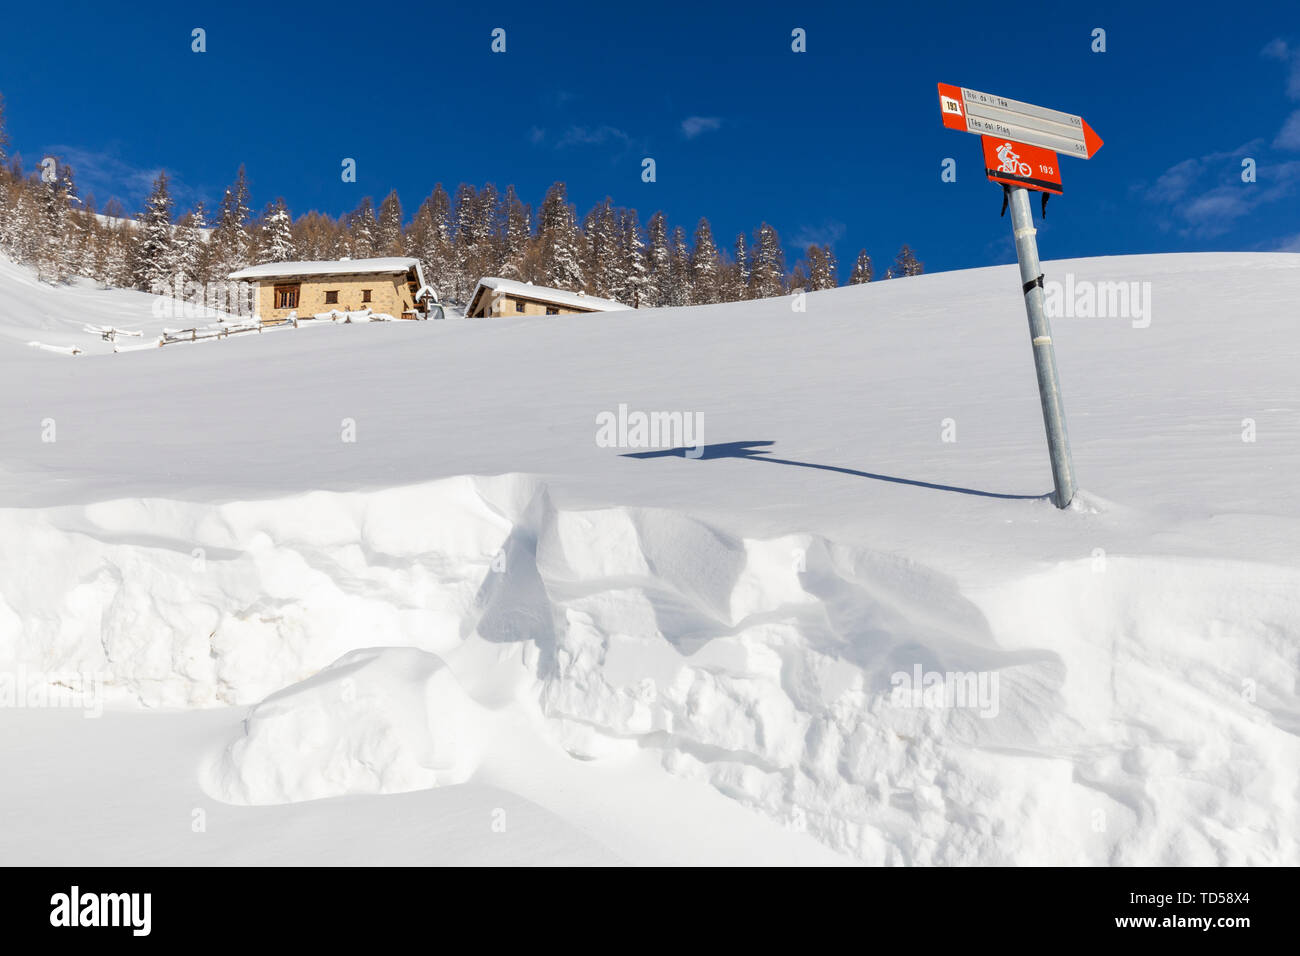 Las cabañas tradicionales con señal de trekking en invierno, Livigno, Valtellina, Lombardía, Italia, Europa Foto de stock